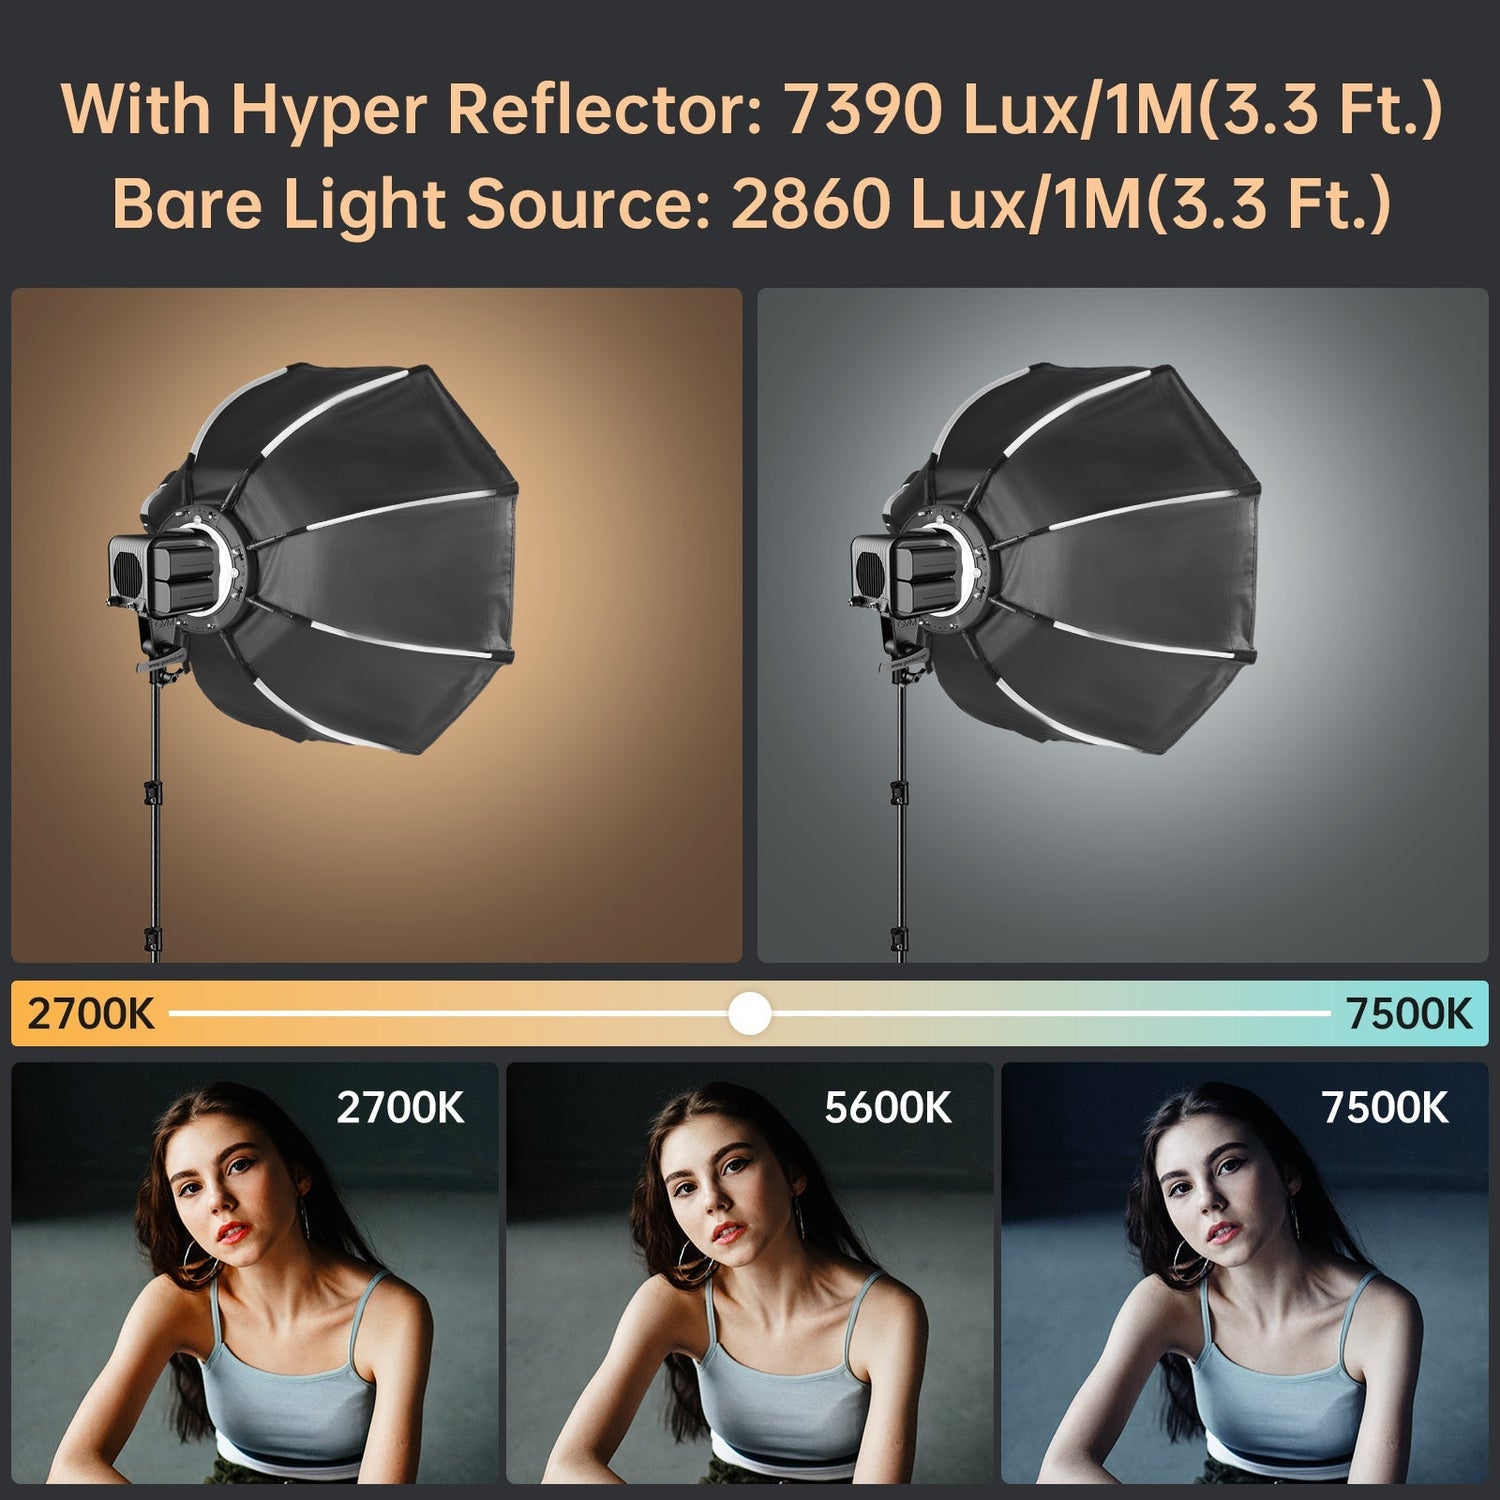 GVM SD80D 80w Bi - Color Spotlight - GVM